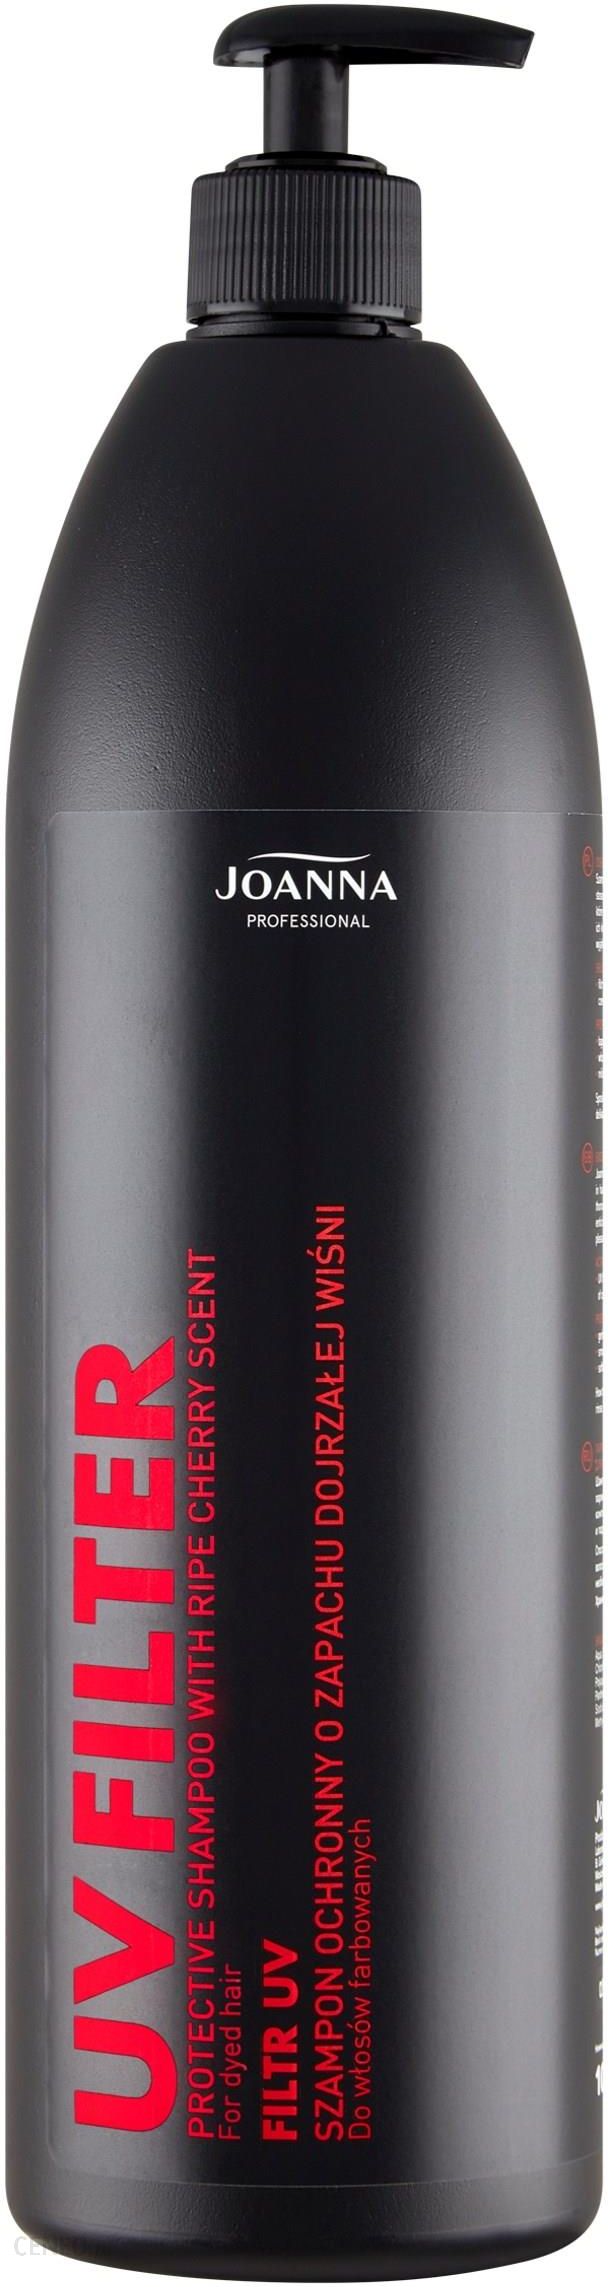 joanna szampon 1000ml z keratyną apteka